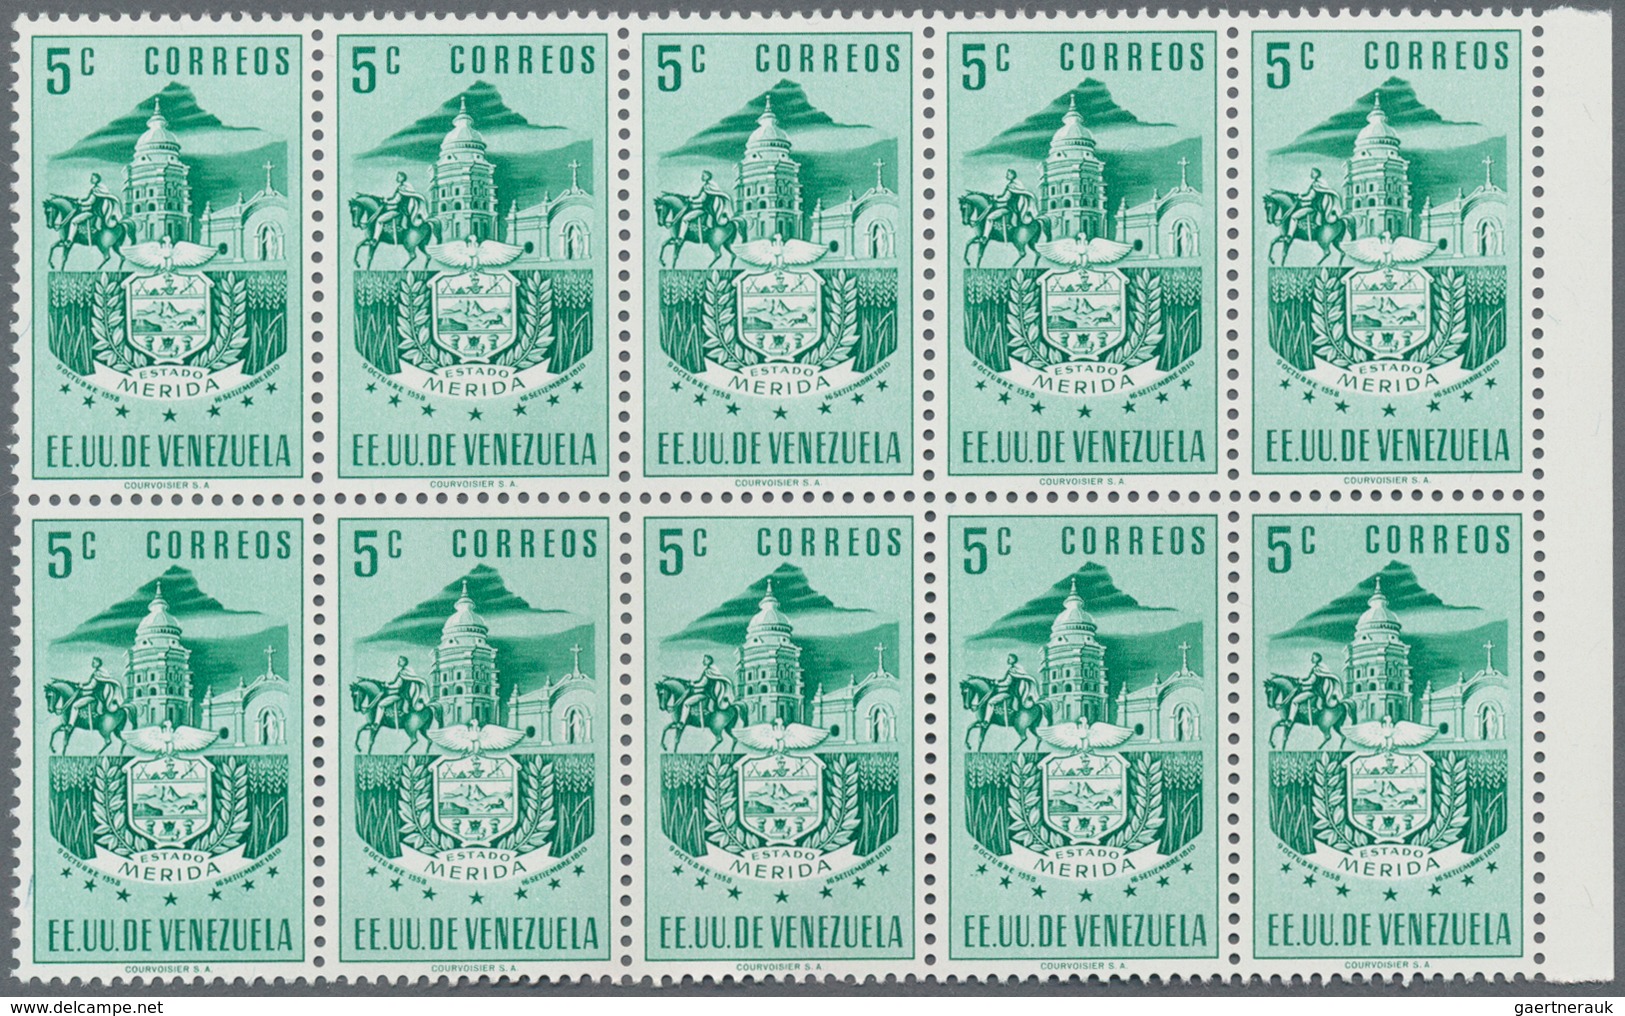 Venezuela: 1953, Coat of Arms 'MERIDA‘ normal stamps complete set of seven in blocks of ten from lef